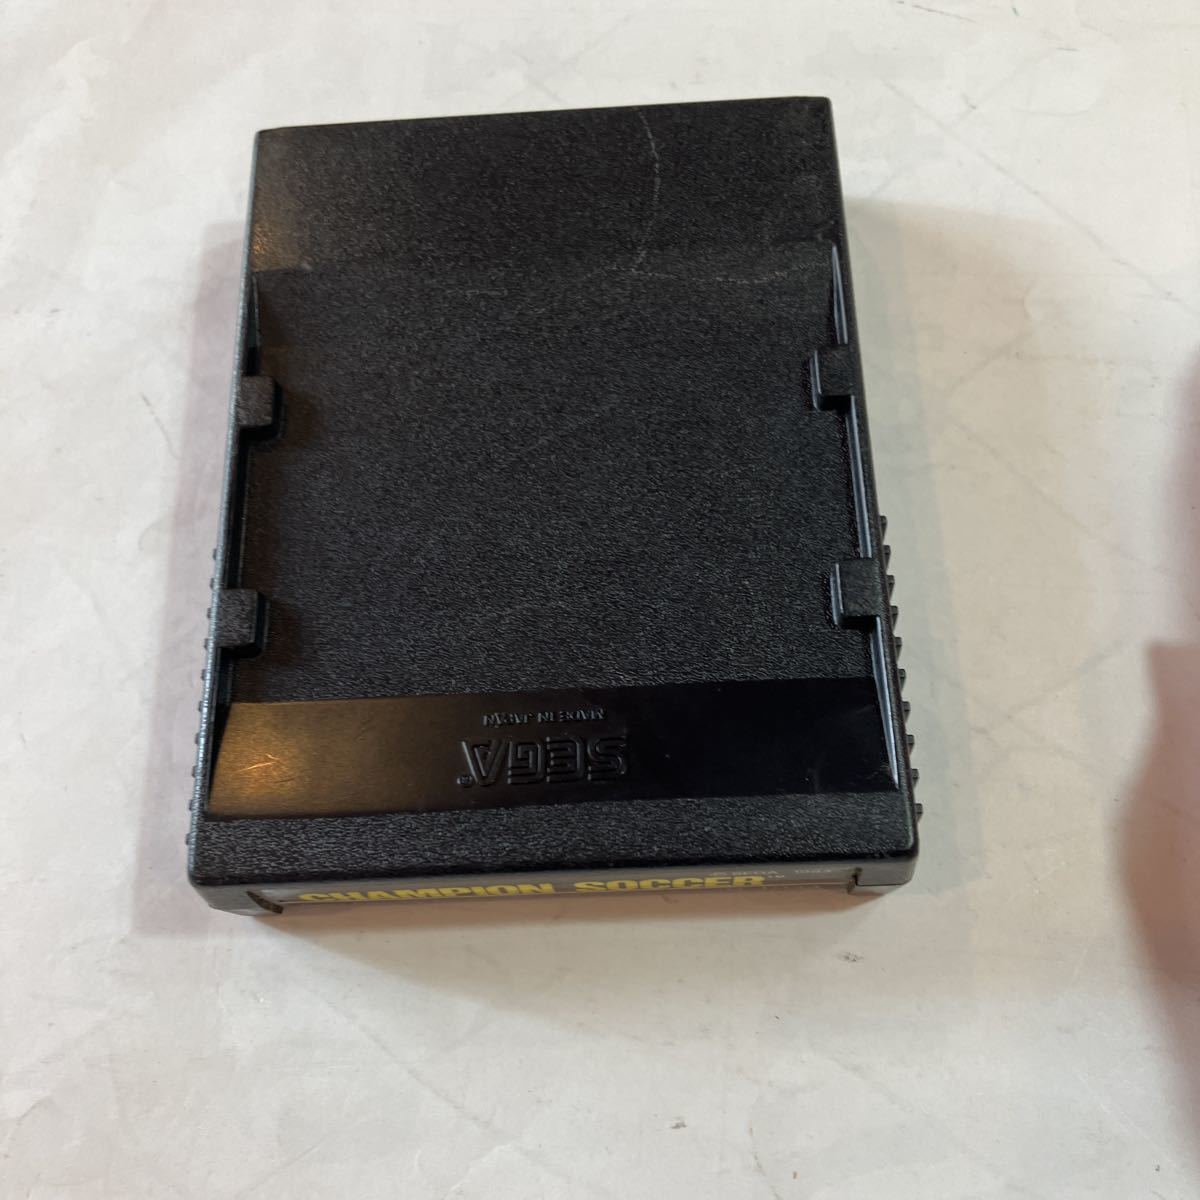 SEGA SC-3000orSC-1000 игра soft CHAMPION SOCCER ROM PACK внешний вид прекрасный товар работоспособность не проверялась 